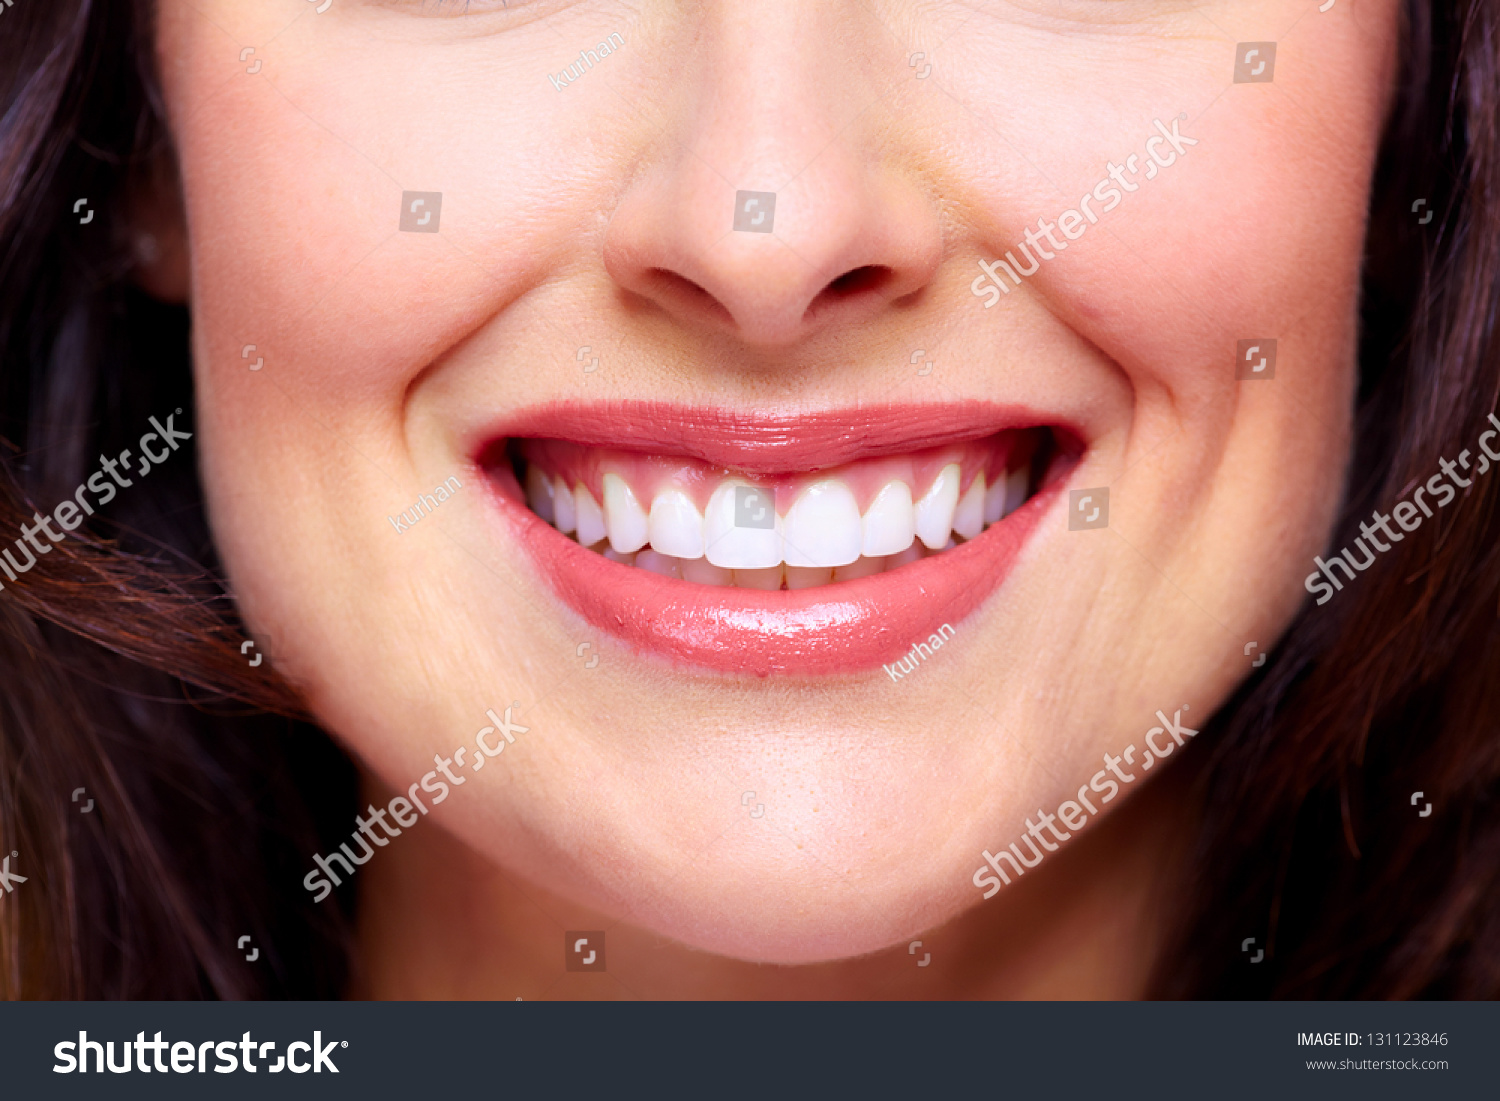 Форма зубов и улыбка